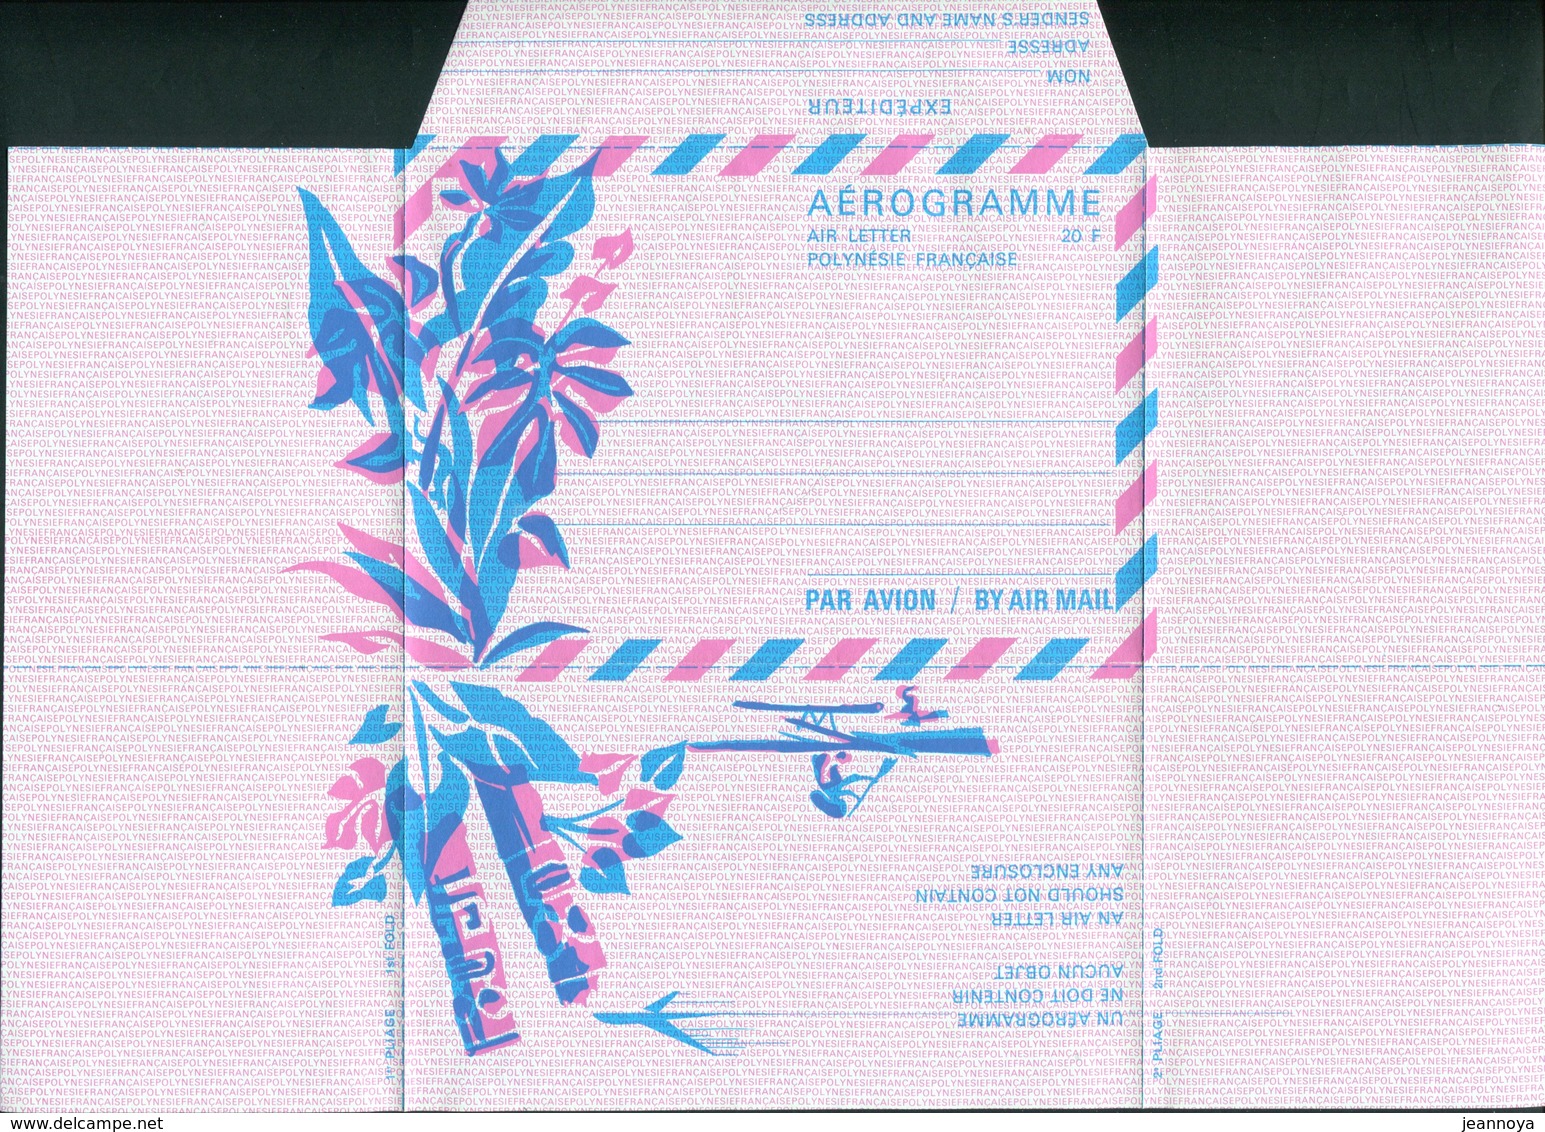 POLYNESIE FRANCAISE  - AEROGRAMME N° 1 DE 1972 - LUXE & RARE - Aerogramme